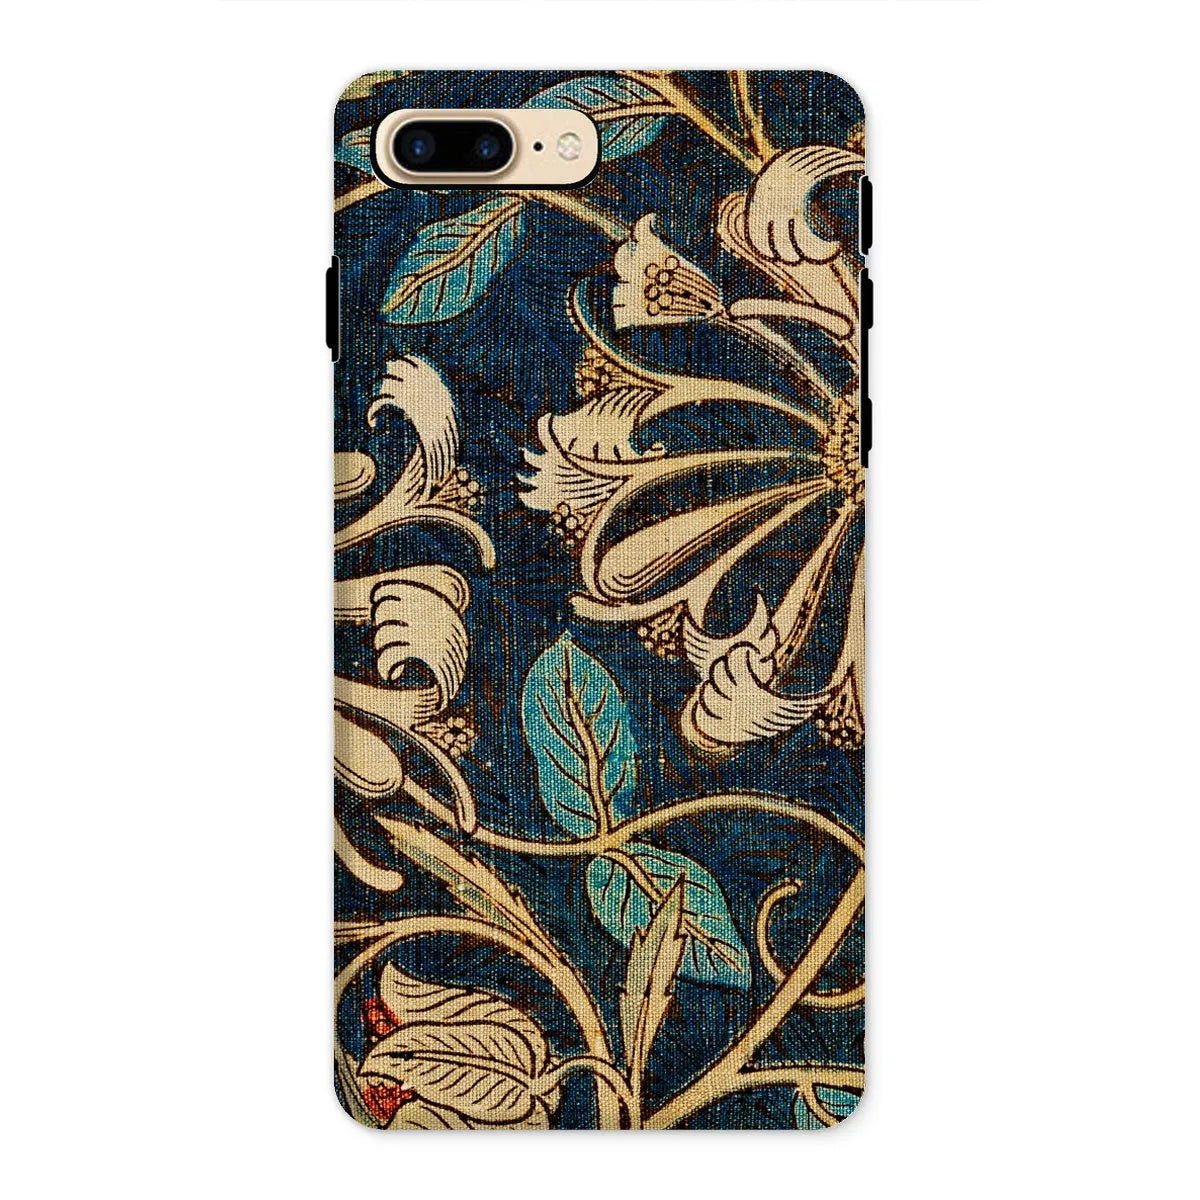 Honeysuckle 3 - Floral Aesthetic Phone Case - William Morris - Iphone 8 Plus / Matte - Mobile Phone Cases - Aesthetic